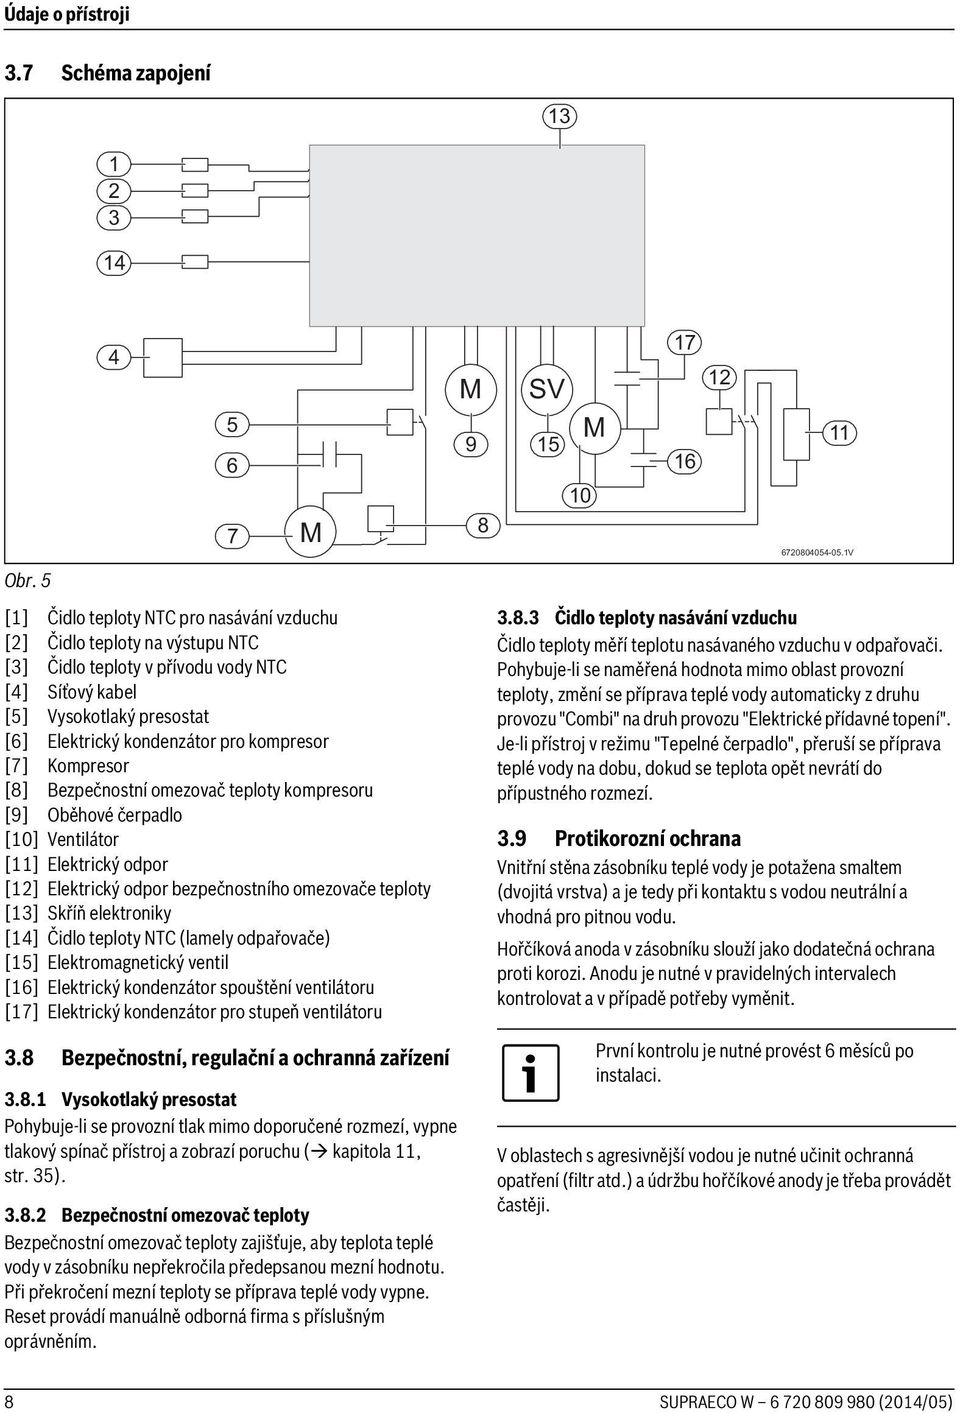 [7] Kompresor [8] Bezpečnostní omezovač teploty kompresoru [9] Oběhové čerpadlo [10] Ventilátor [11] Elektrický odpor [12] Elektrický odpor bezpečnostního omezovače teploty [13] Skříň elektroniky